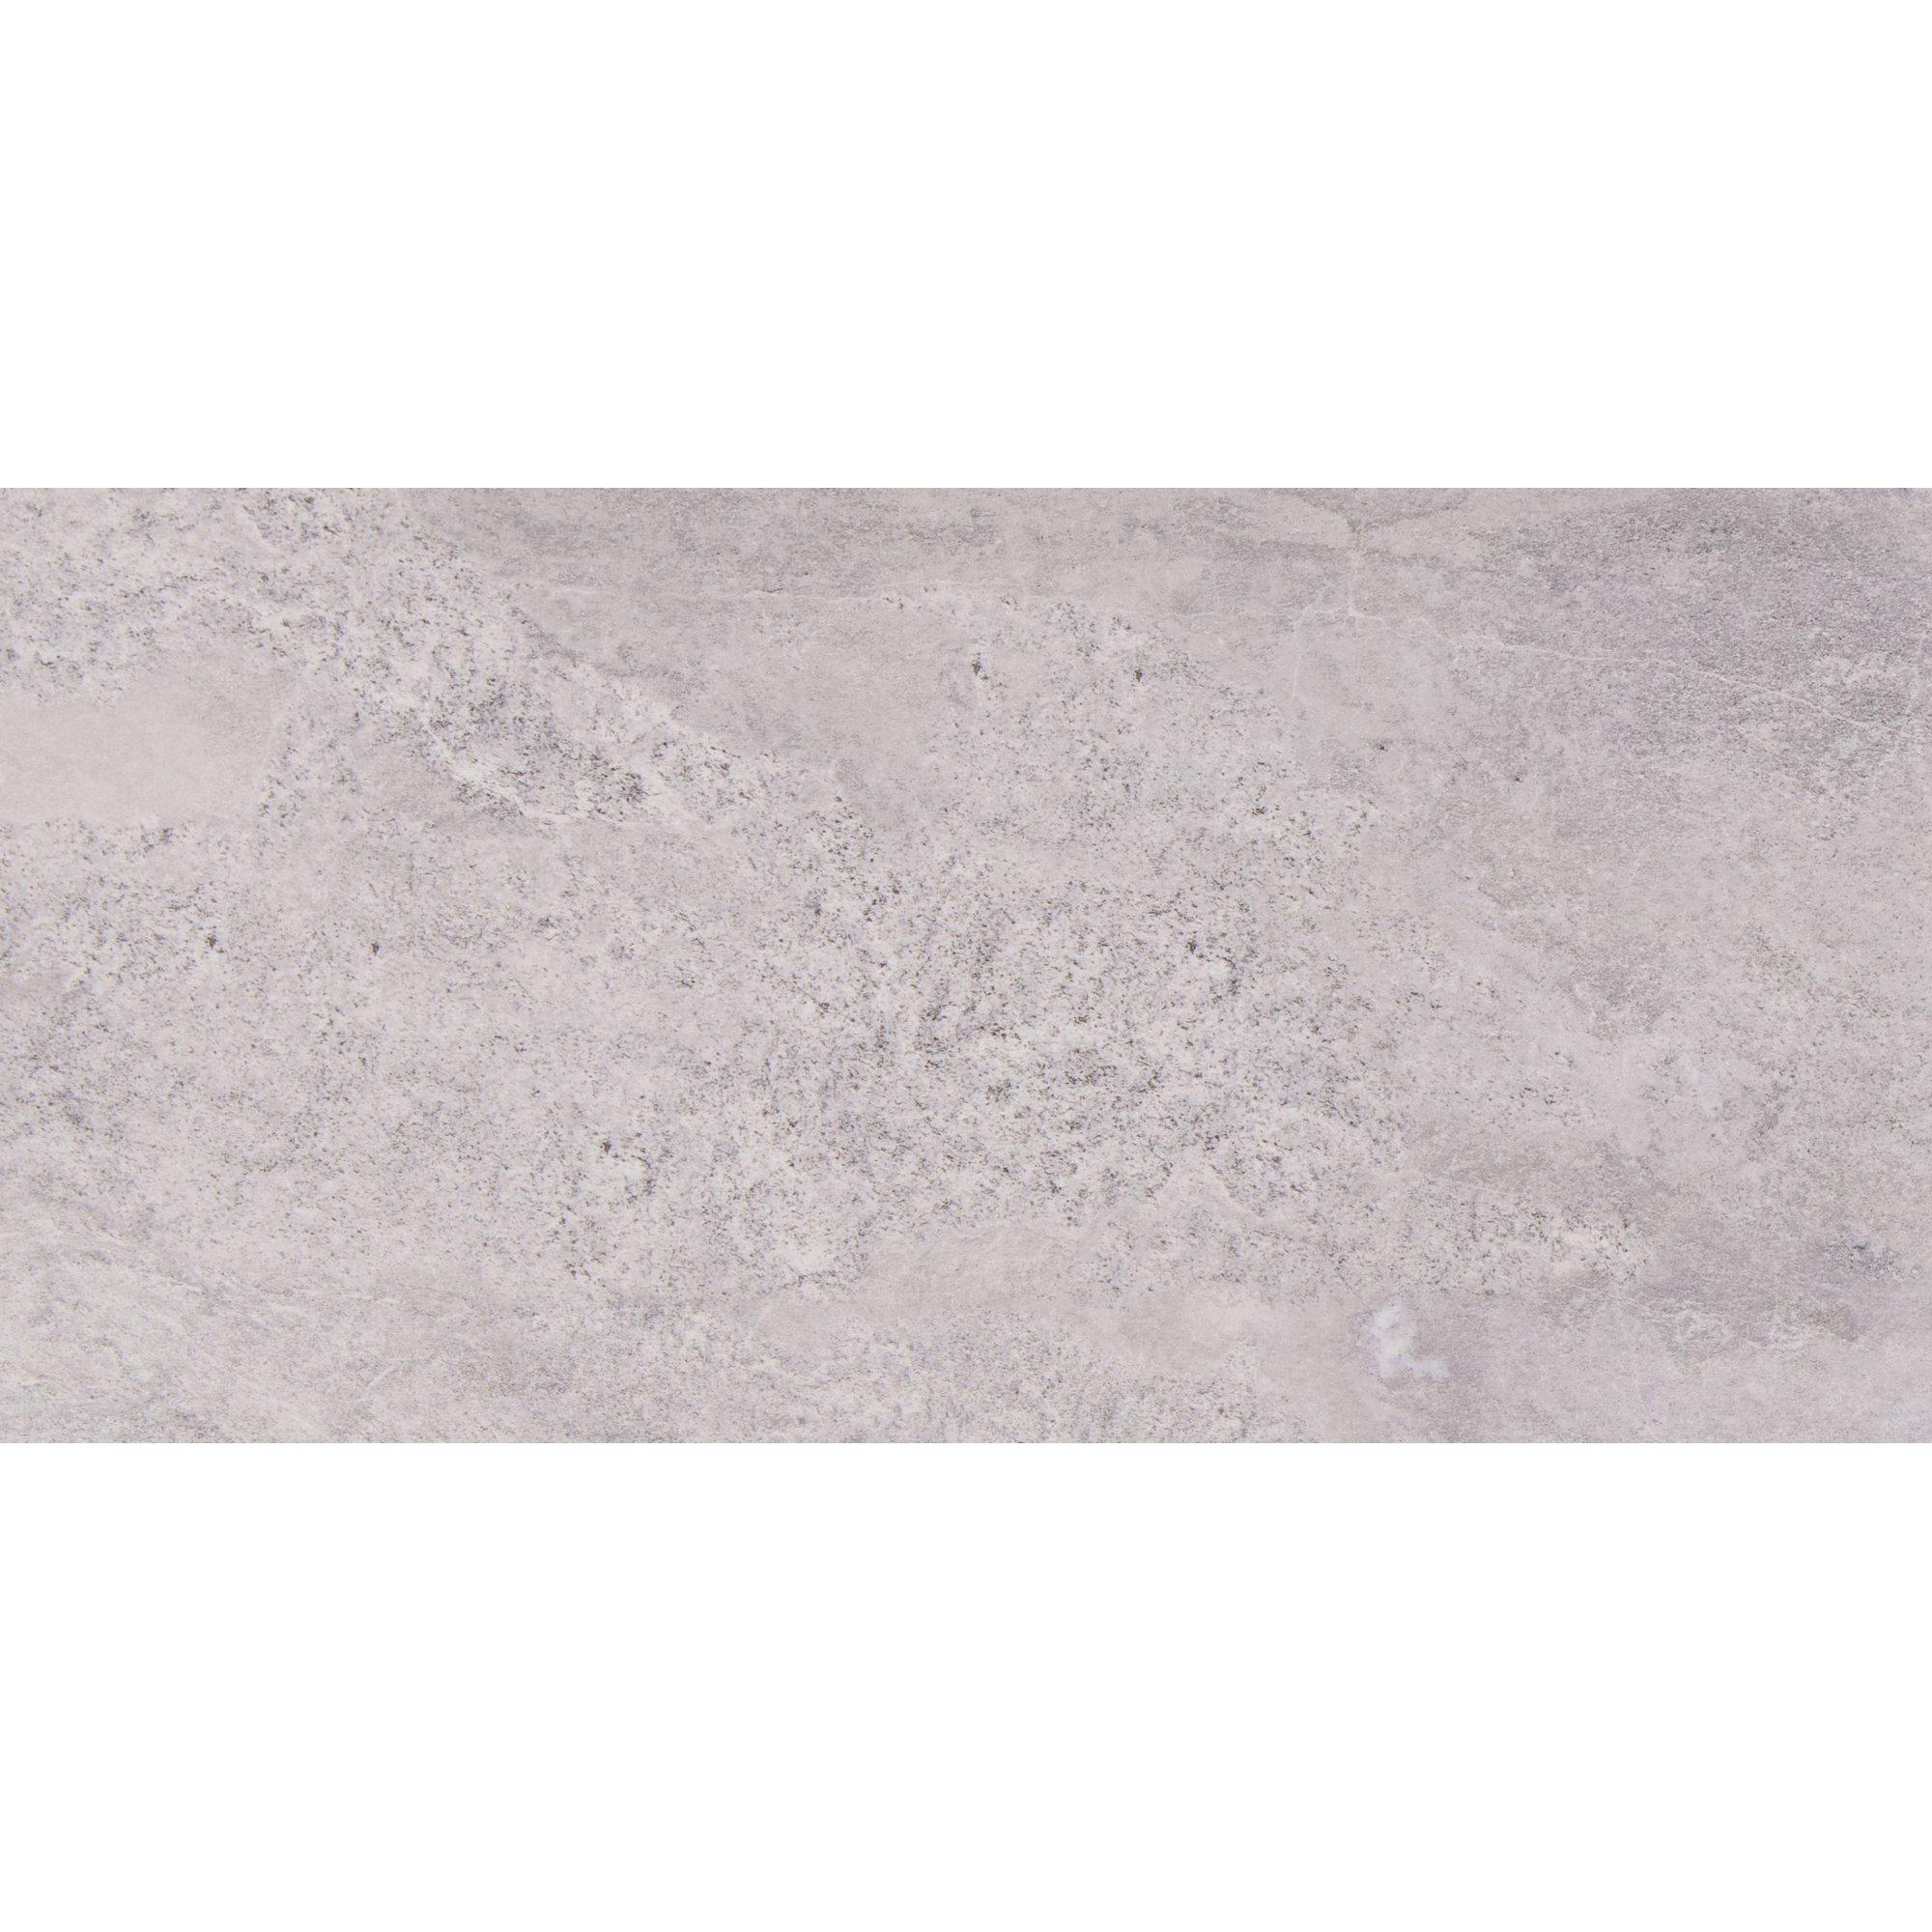 Bodenfliese 'Tempio' Feinsteinzeug grau-braun 30,2 x 60,4 cm + product picture